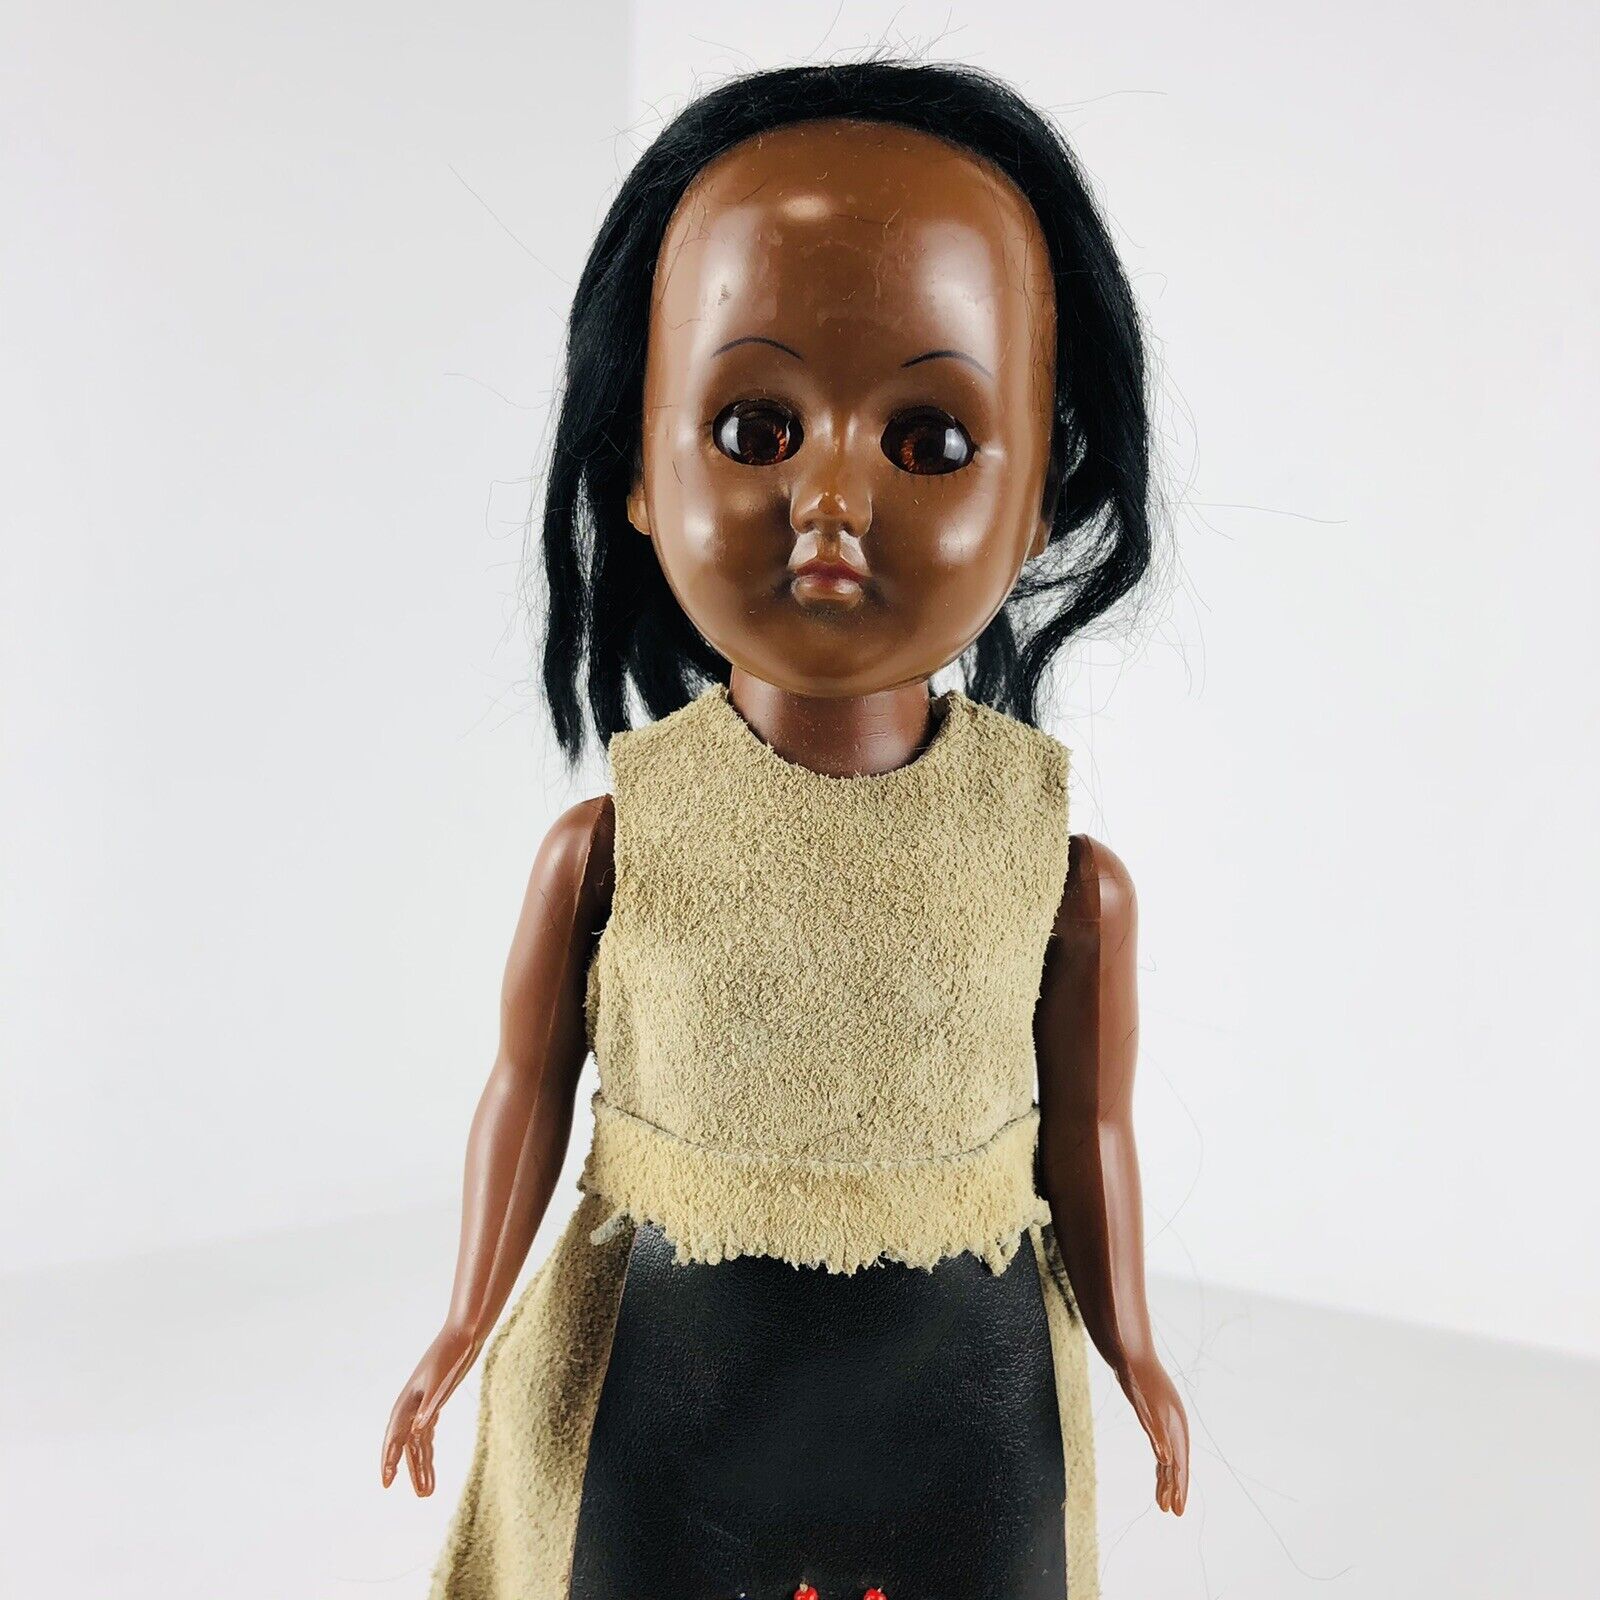 Vintage Native American Girl Doll Sleepy Eyes Plastic 12”